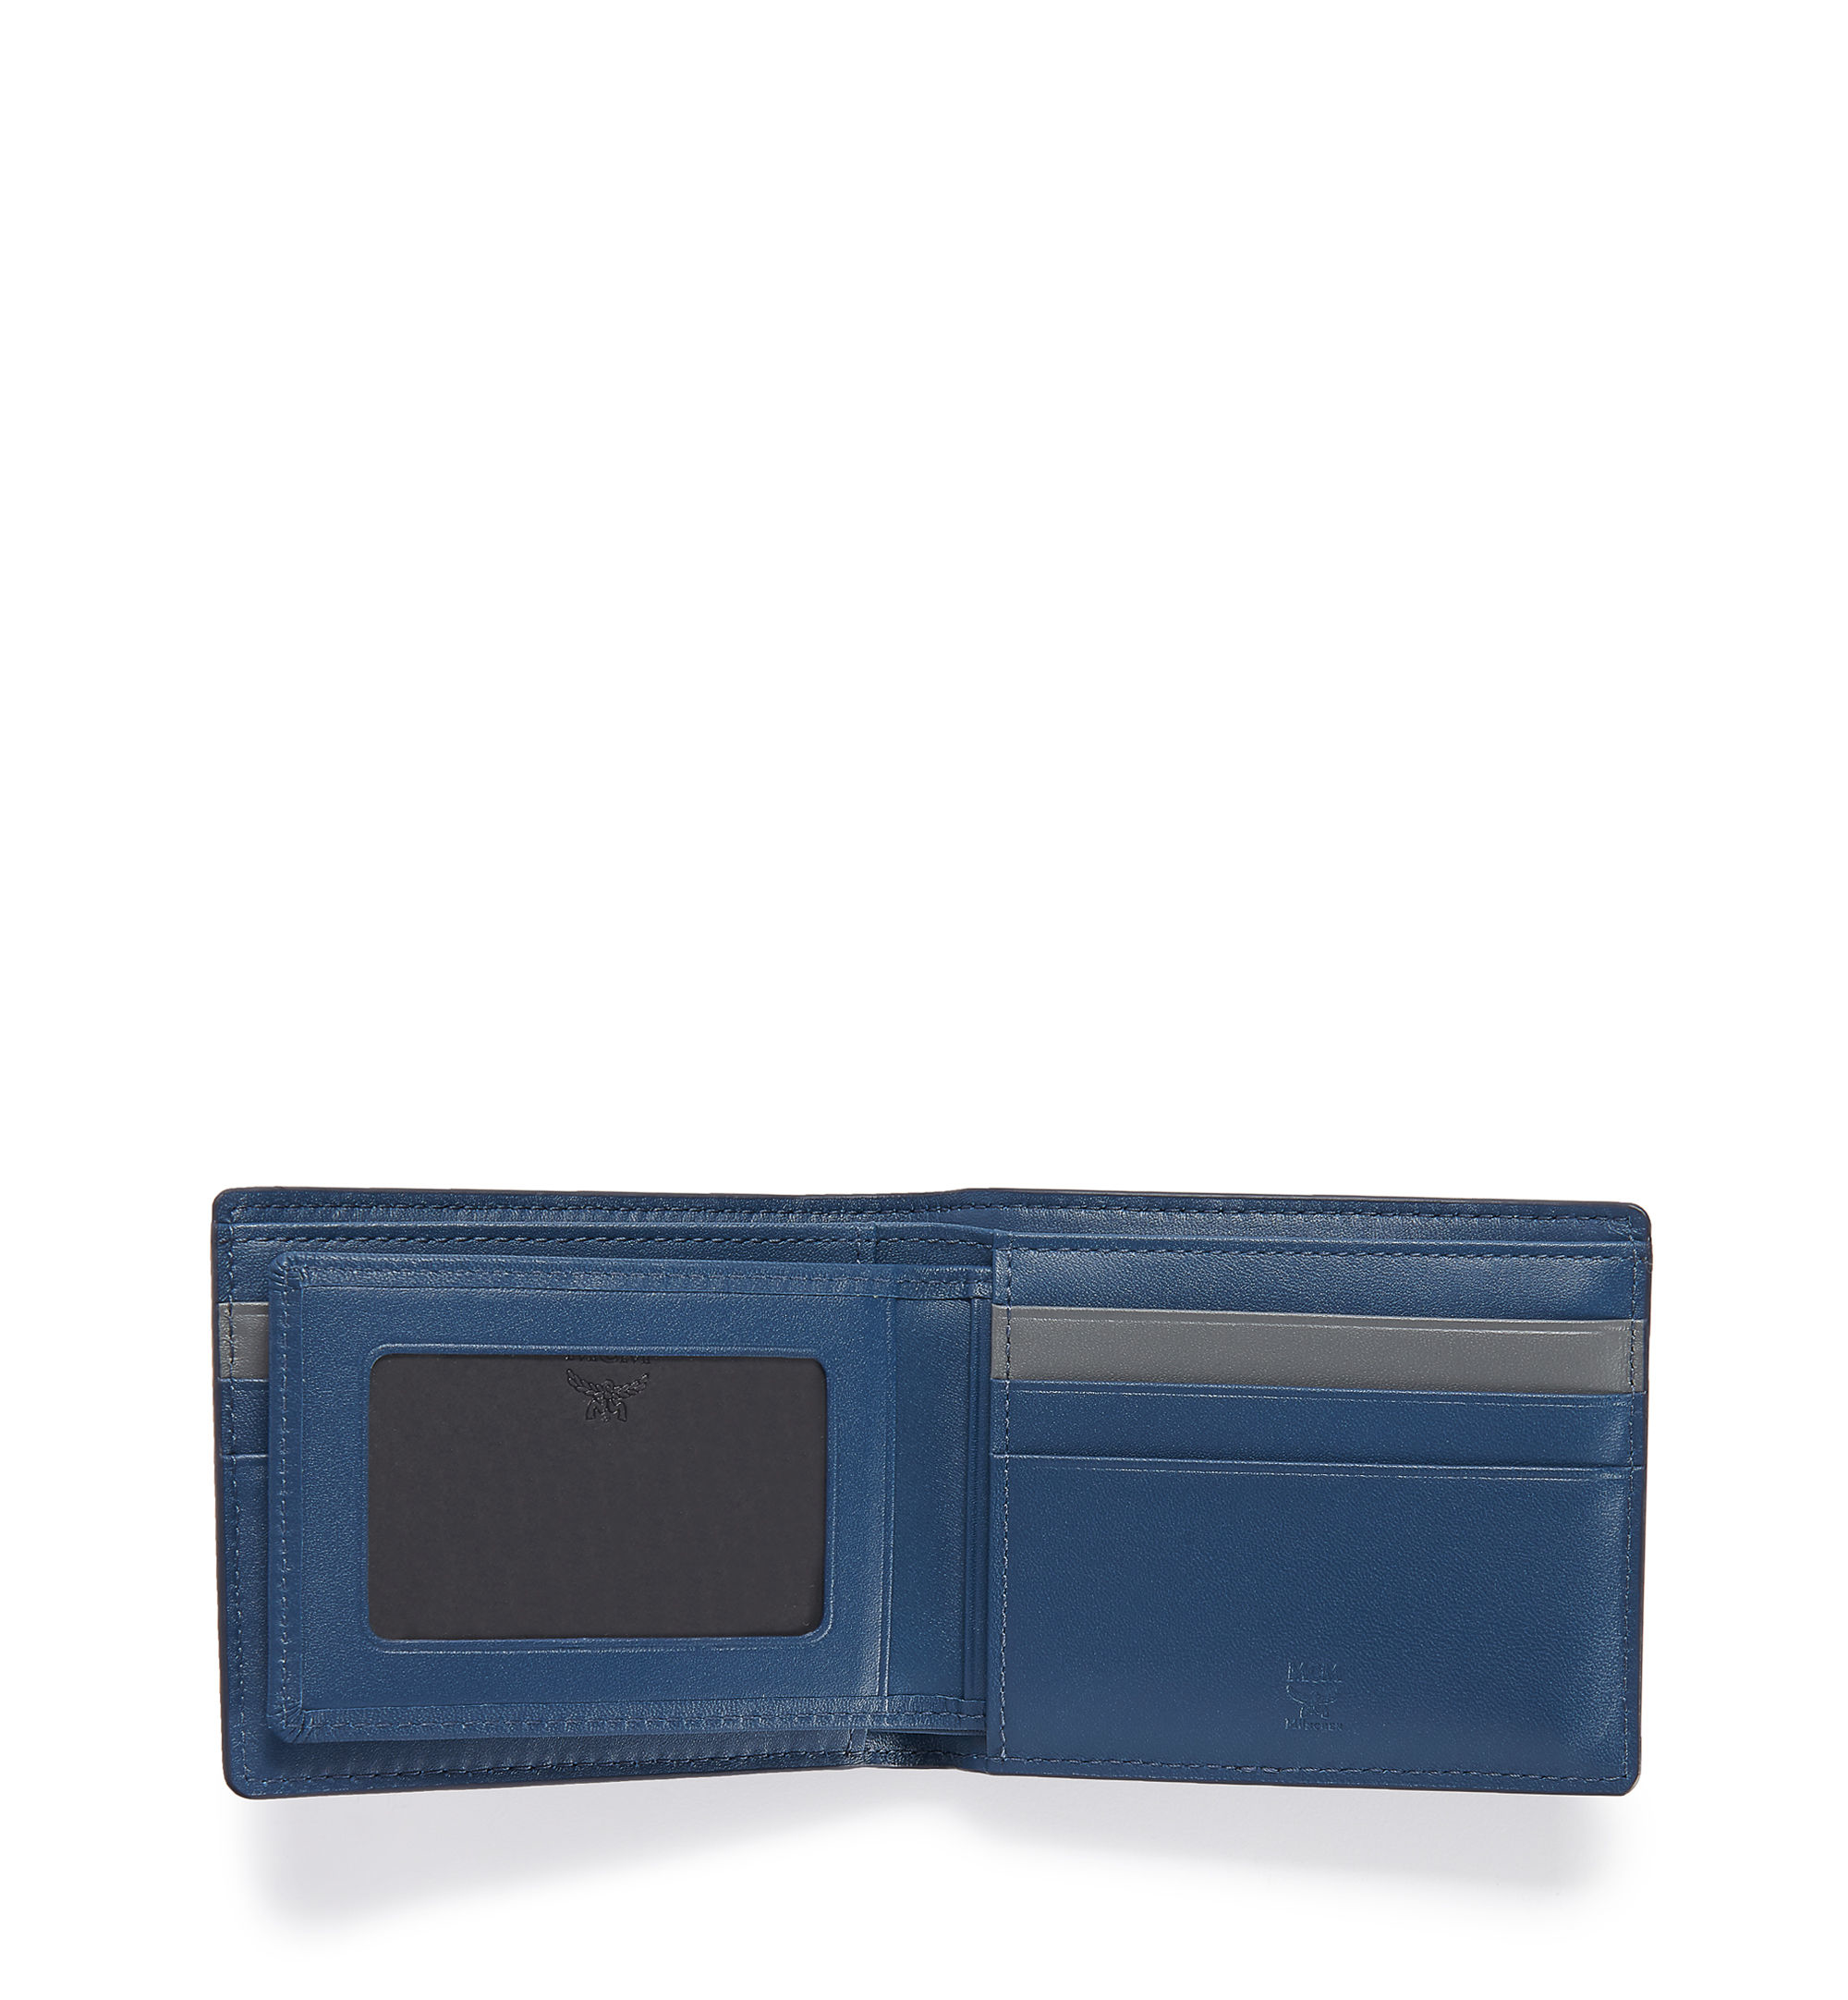 MCM Sigmund Wallet in Blue for Men - Lyst